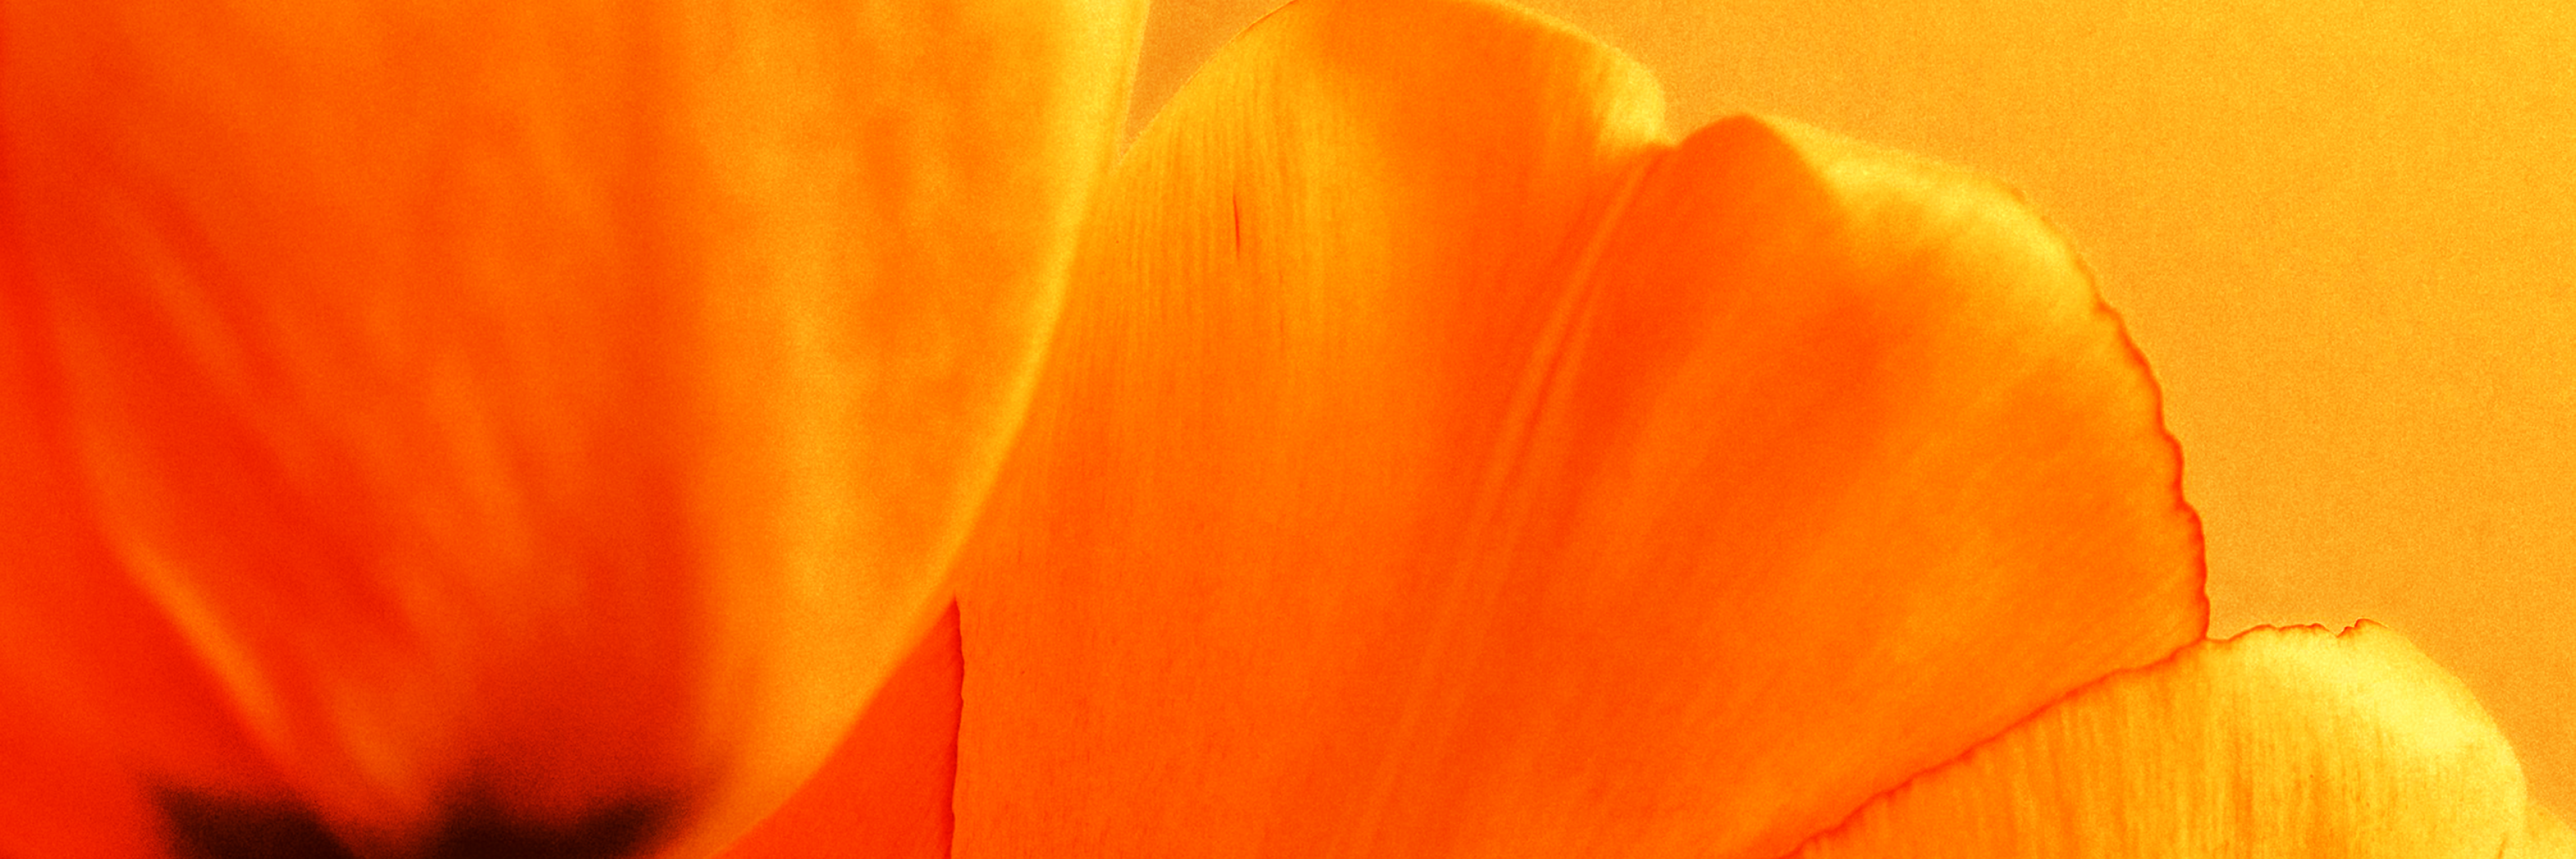 En närbild på tulpaner i en varm orange färg.